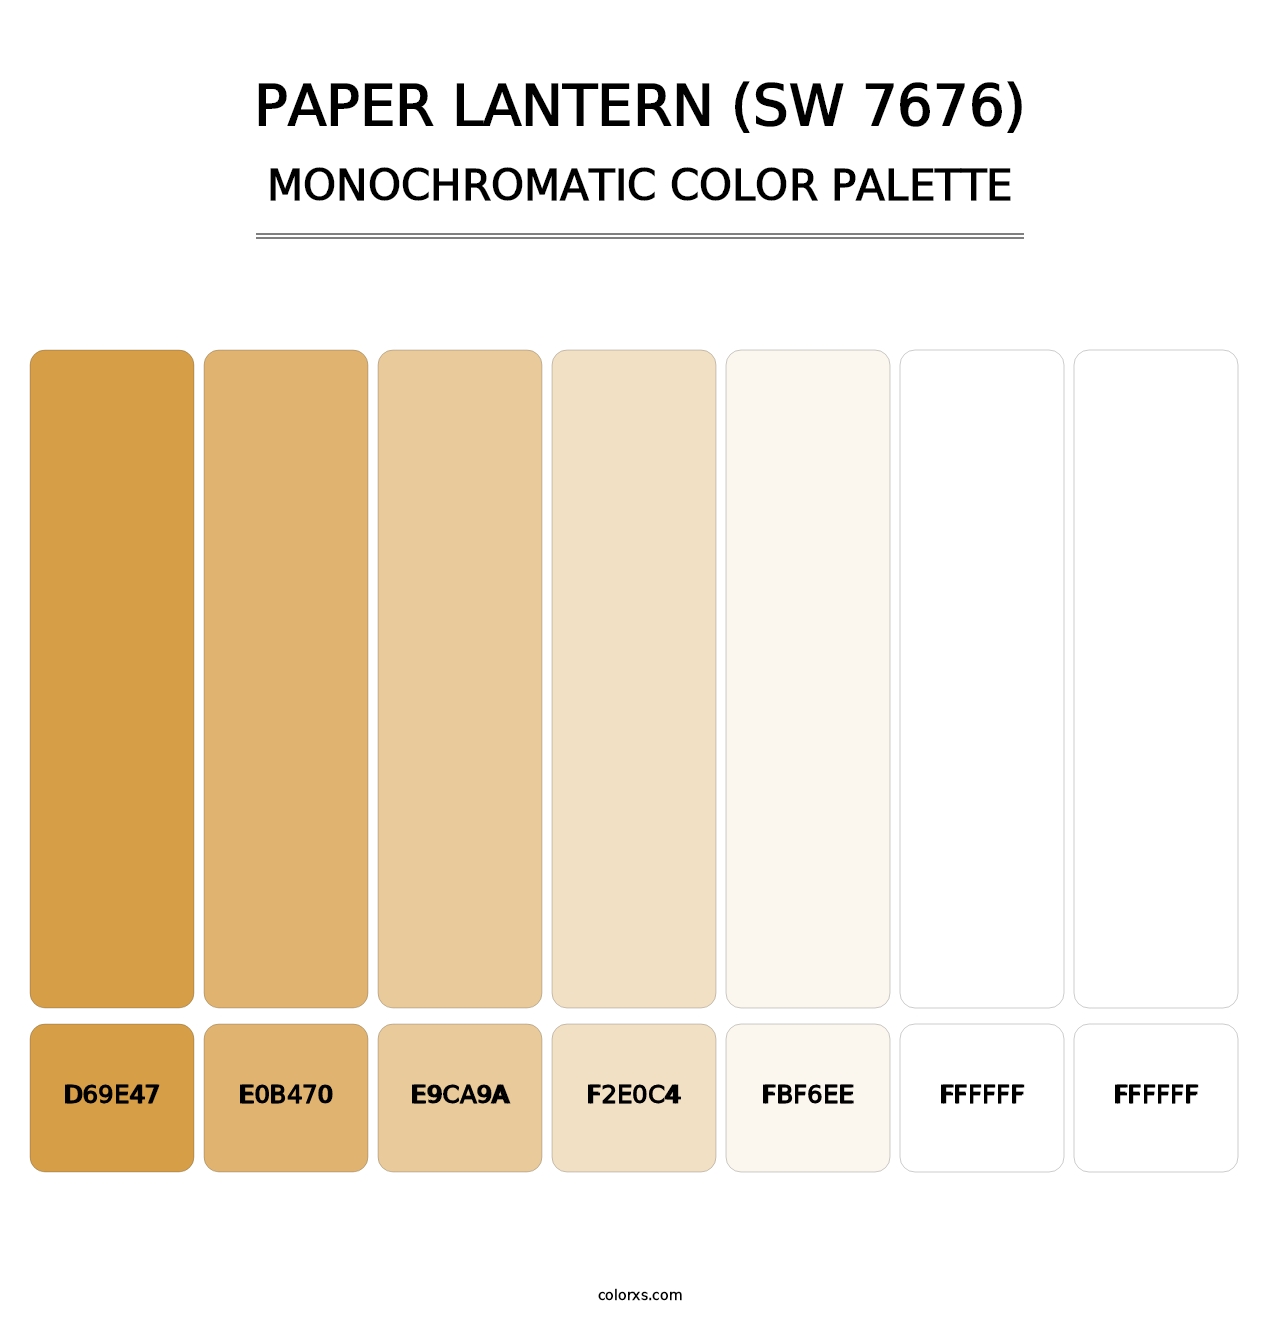 Paper Lantern (SW 7676) - Monochromatic Color Palette